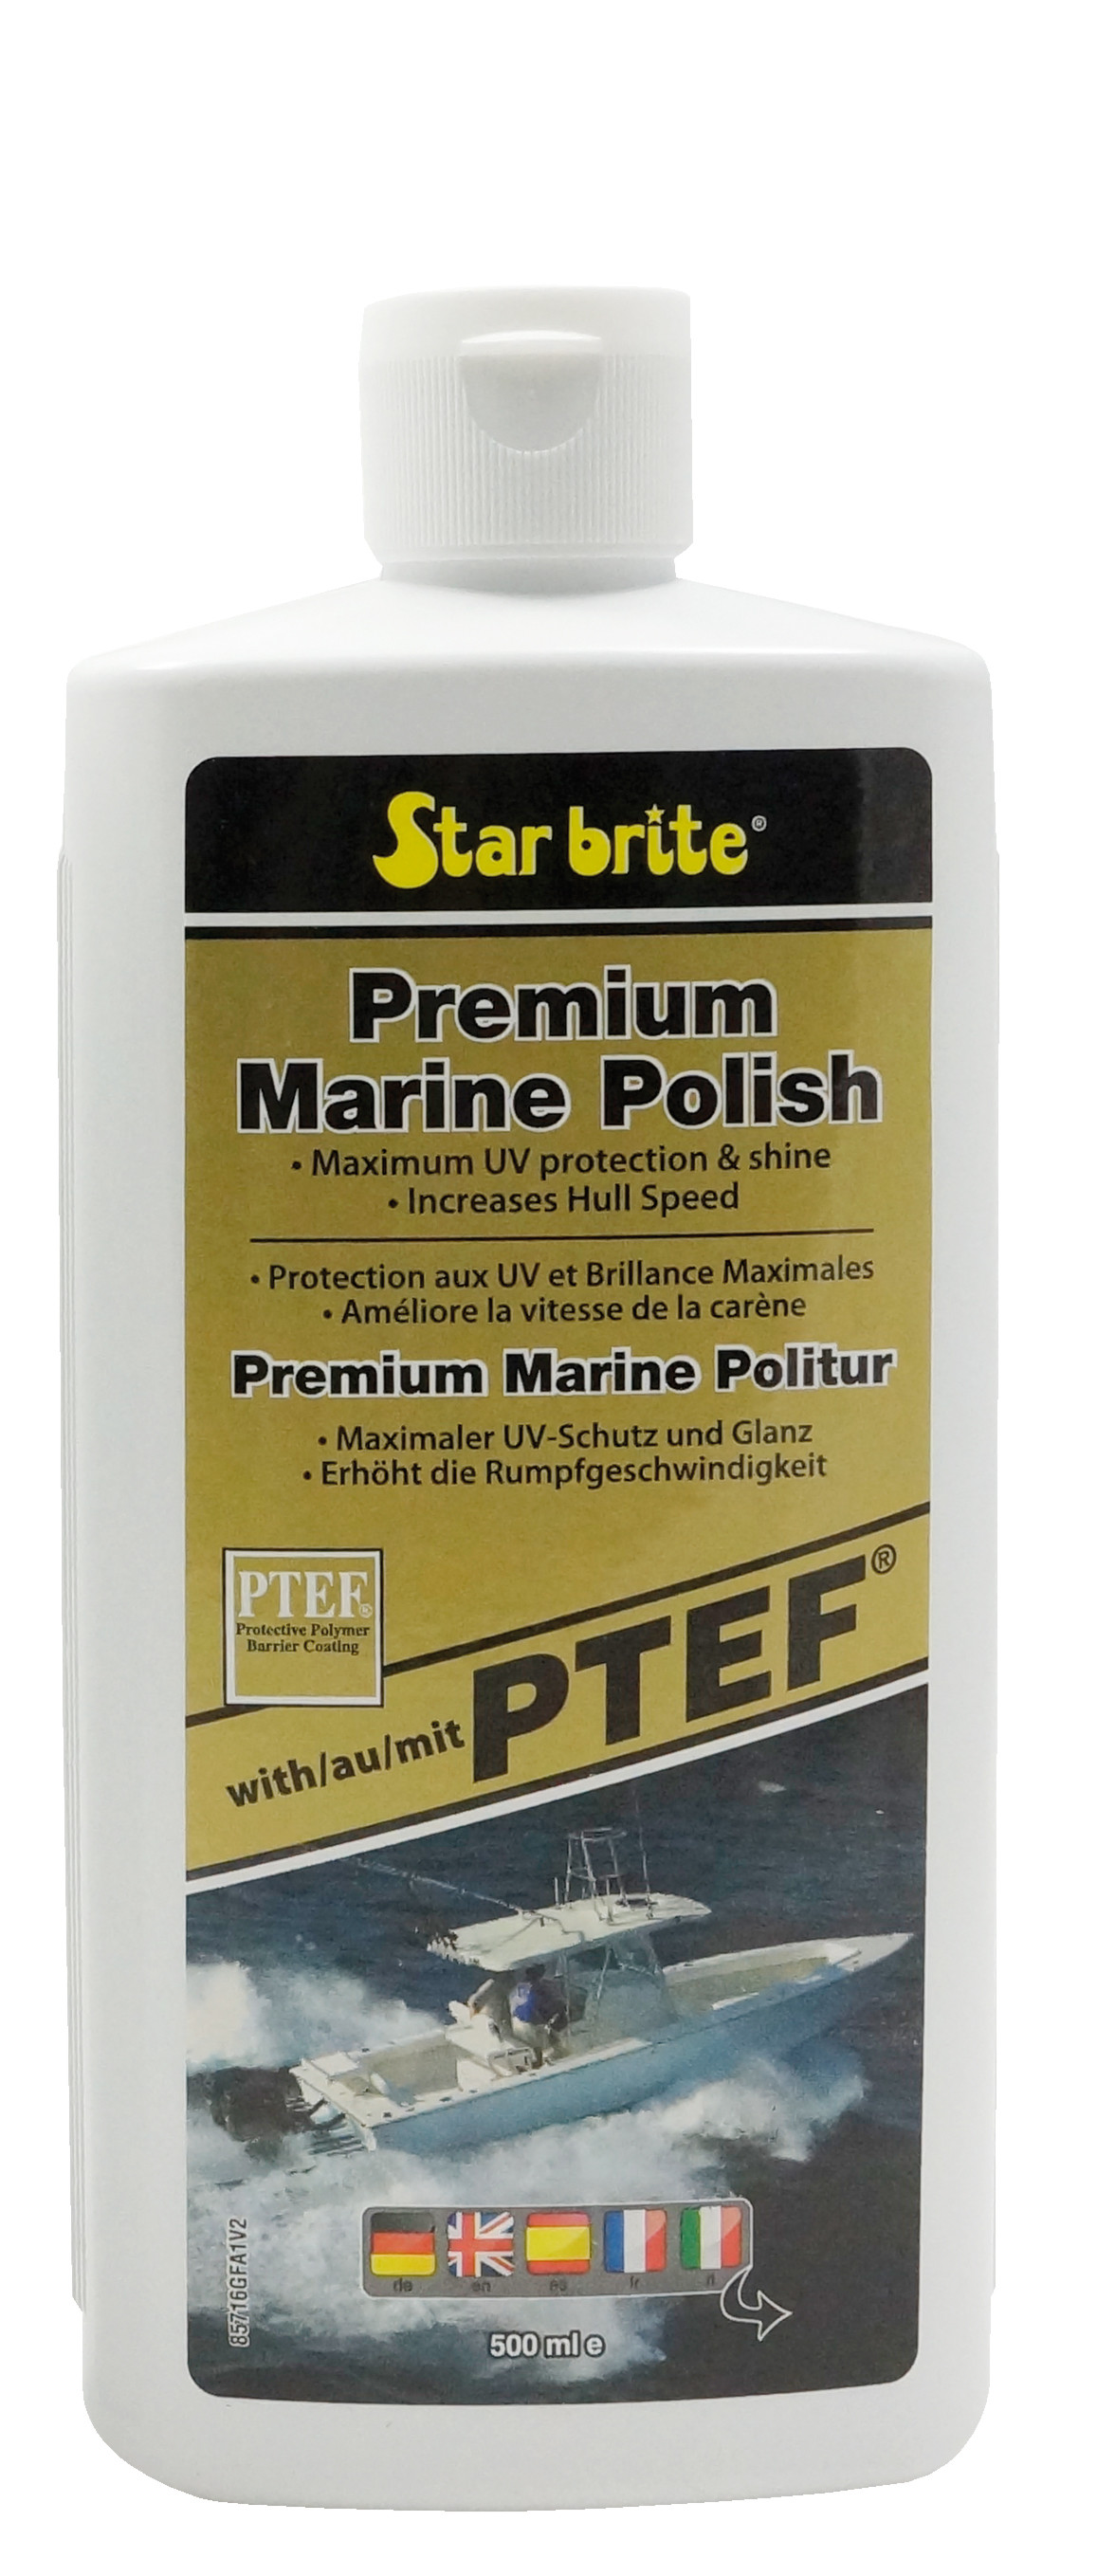 Premium Marine Polish mit PTEF